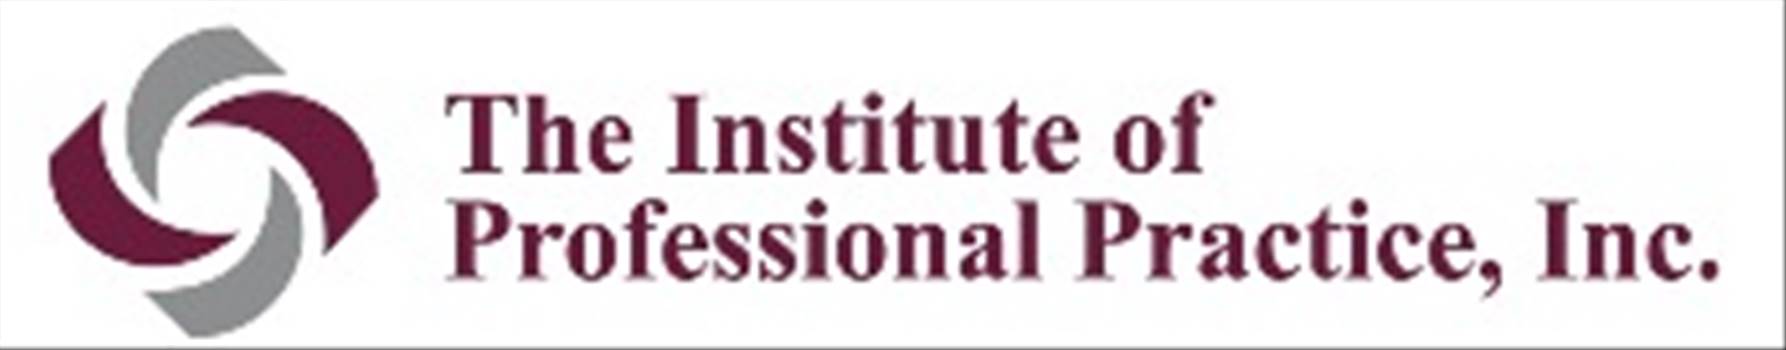 IPPI Logo (tiny logo).jpg - 